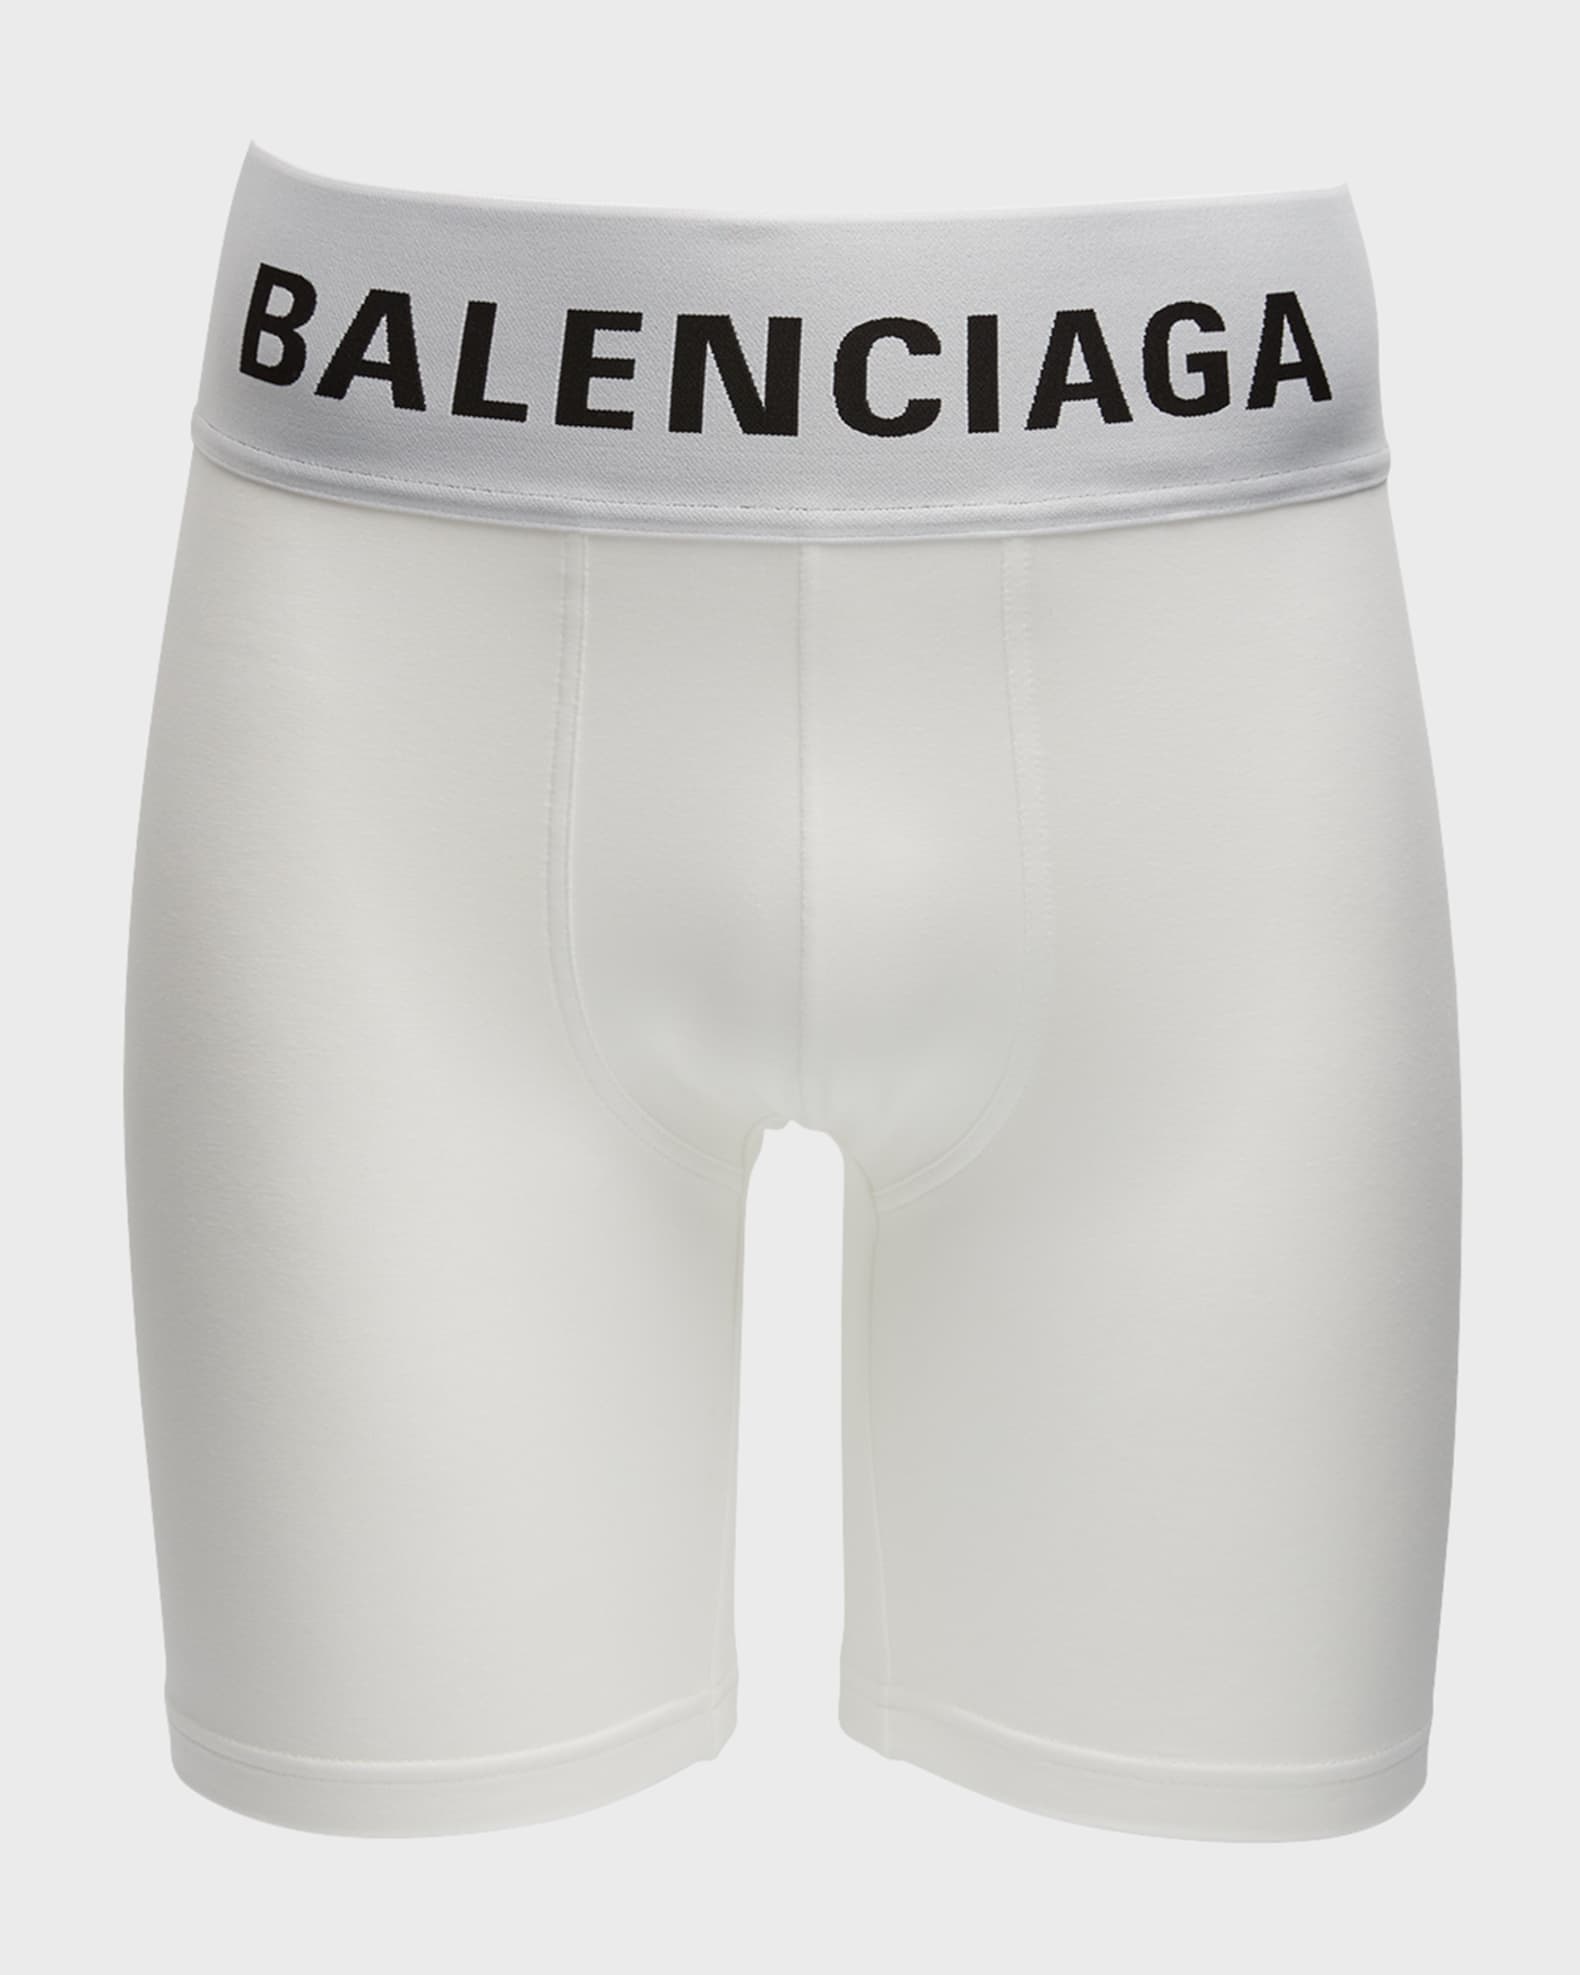 Balenciaga Boxers for Men